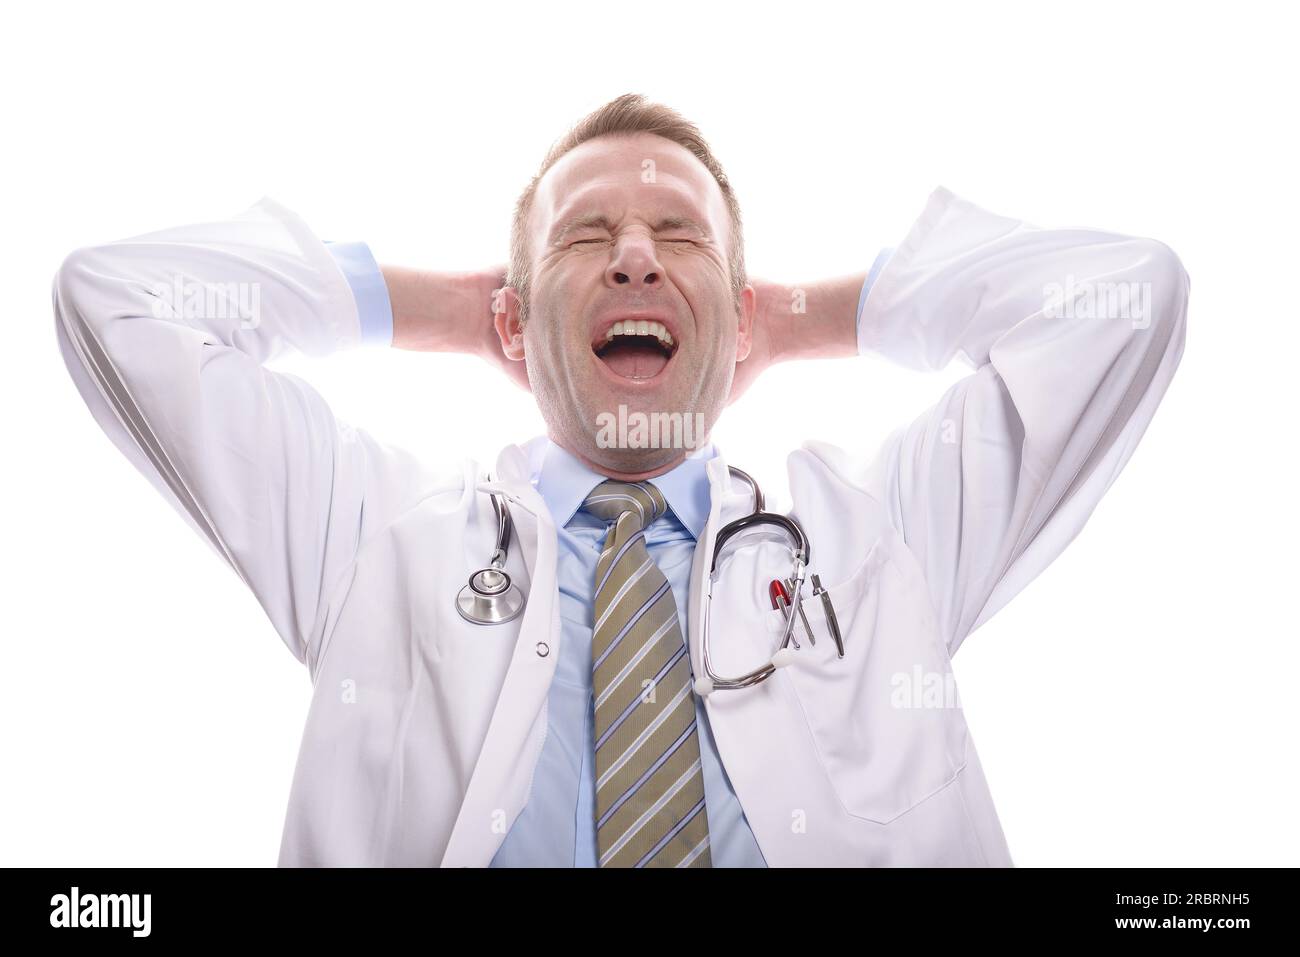 Zufriedener erfolgreicher Arzt entspannt mit geschlossenen Augen, seiner Hand hinter dem Kopf und einem intensiven Gähnen, isoliert auf weiß Stockfoto